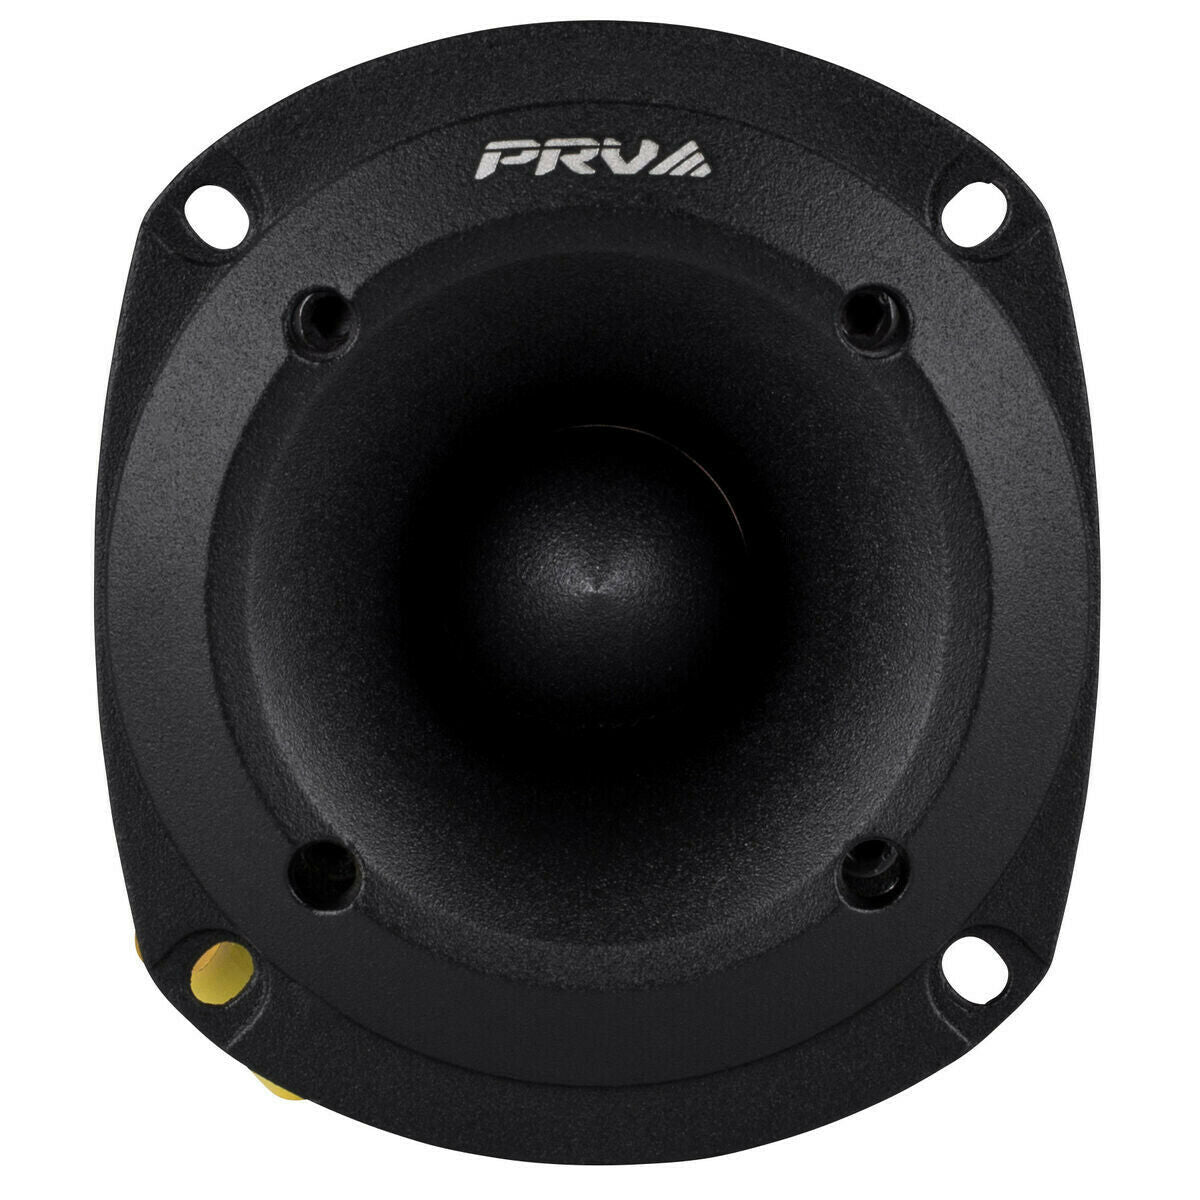 4x PRV 6.5" Midbass Speakers 6MB200-4 v2 + 4 x Tweeters TW350Ti